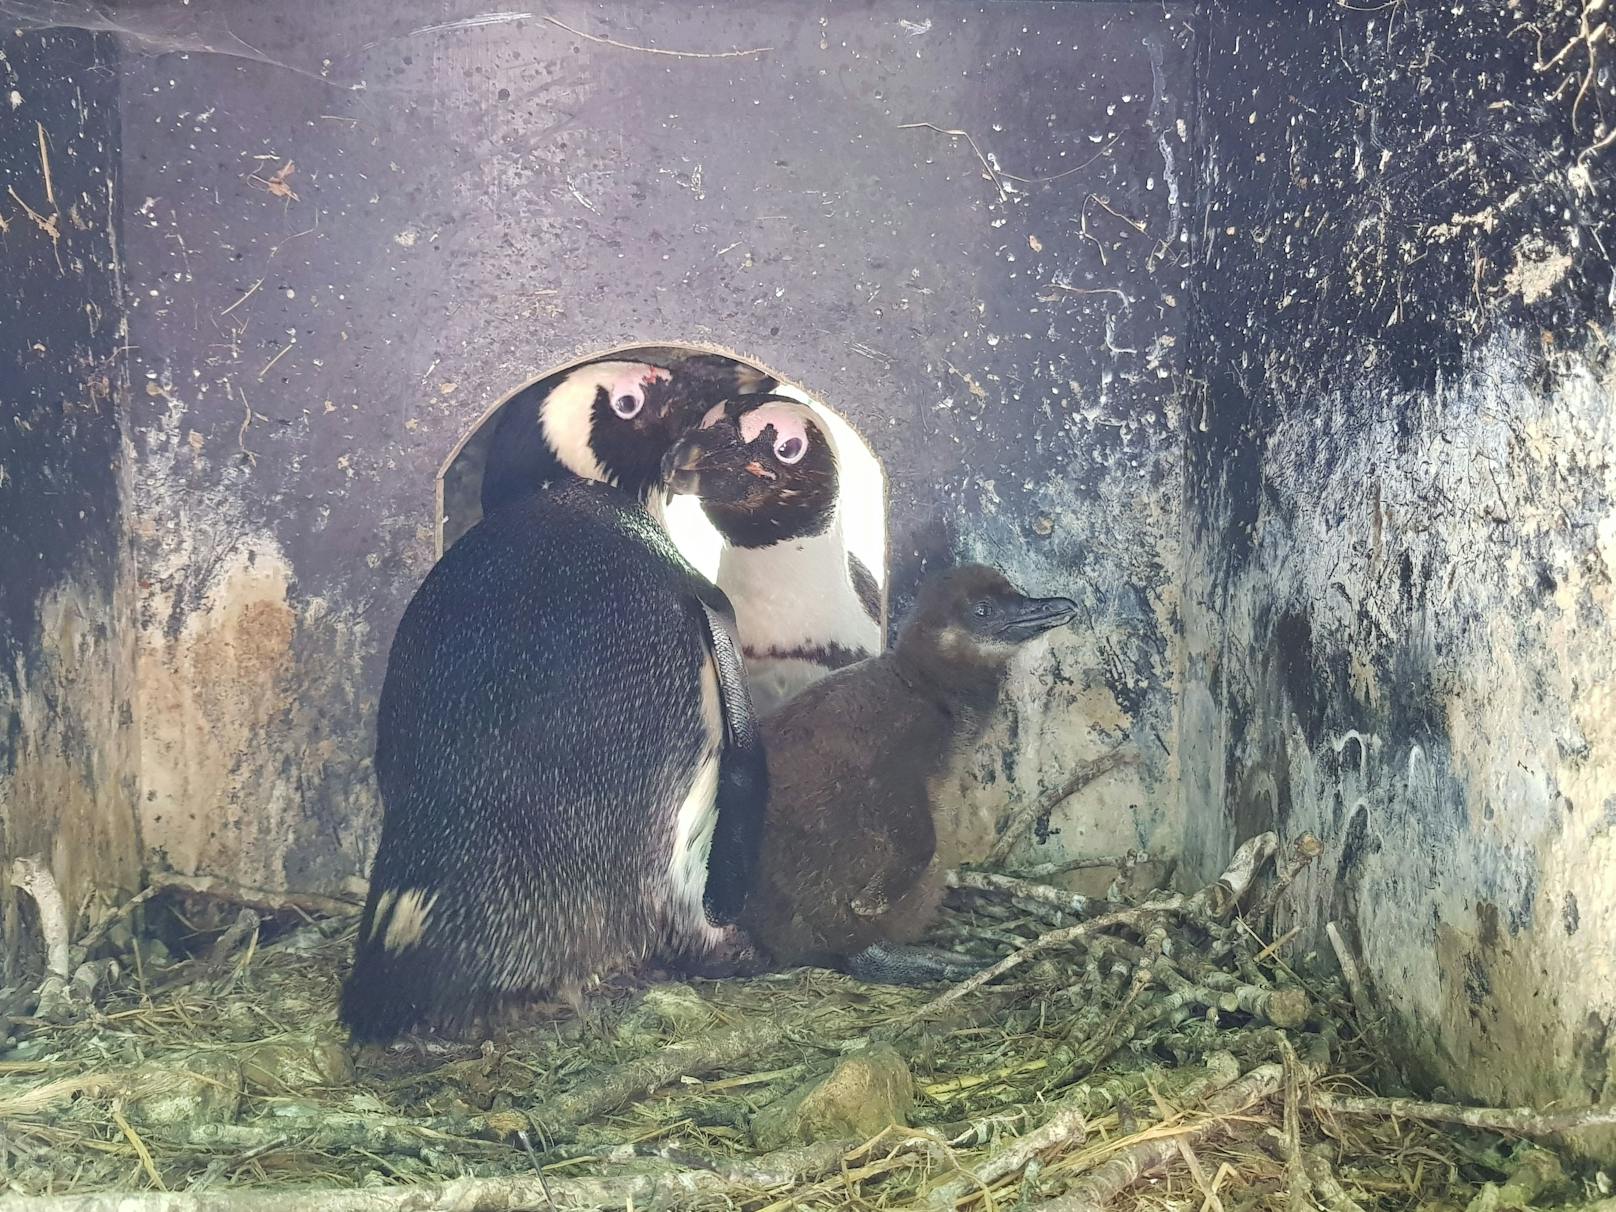 Der Zoo glaubte anfänglich, dass der junge Pinguin einem Raubtier zum Opfer gefallen war.